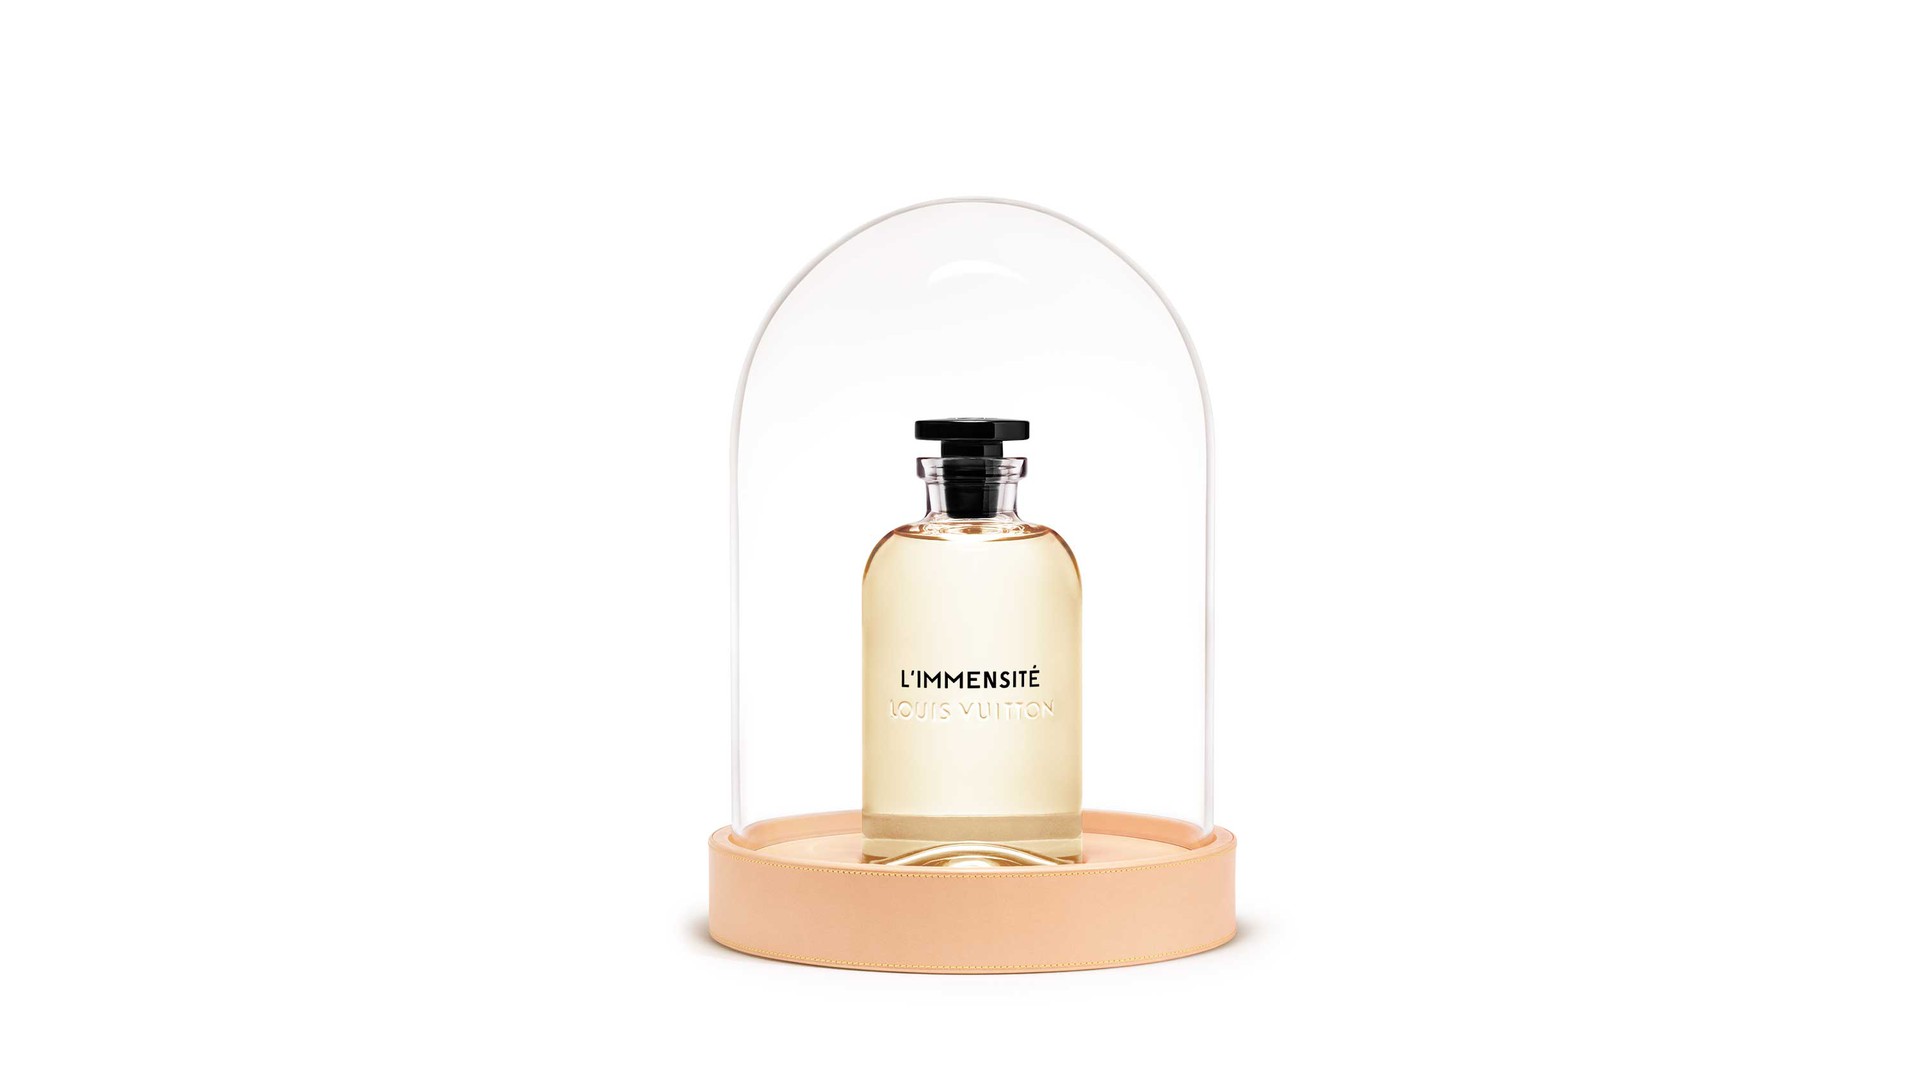 Eau de Voyage Louis Vuitton perfume - a fragrance for women and